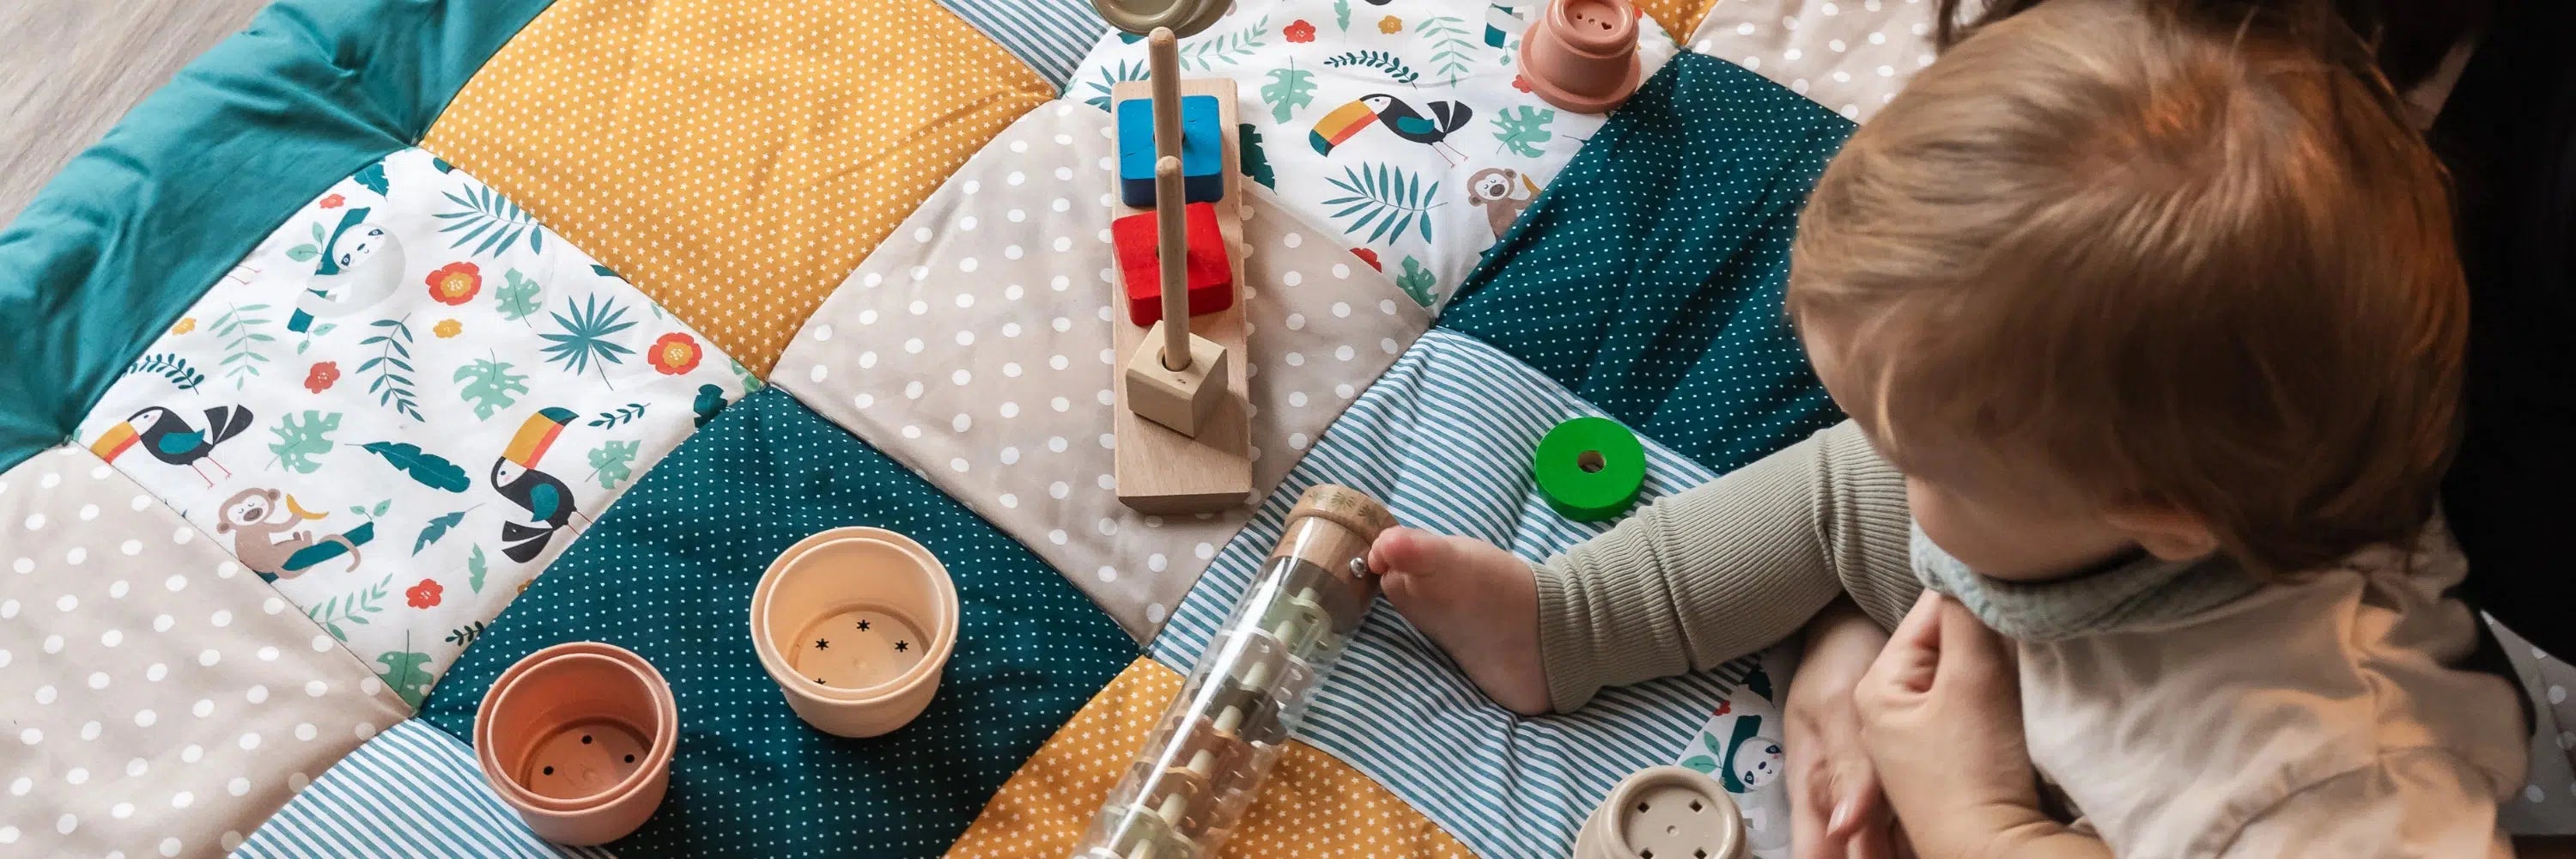 5 Kreative Spielideen für Babys auf einer Krabbeldecke-ULLENBOOM Baby